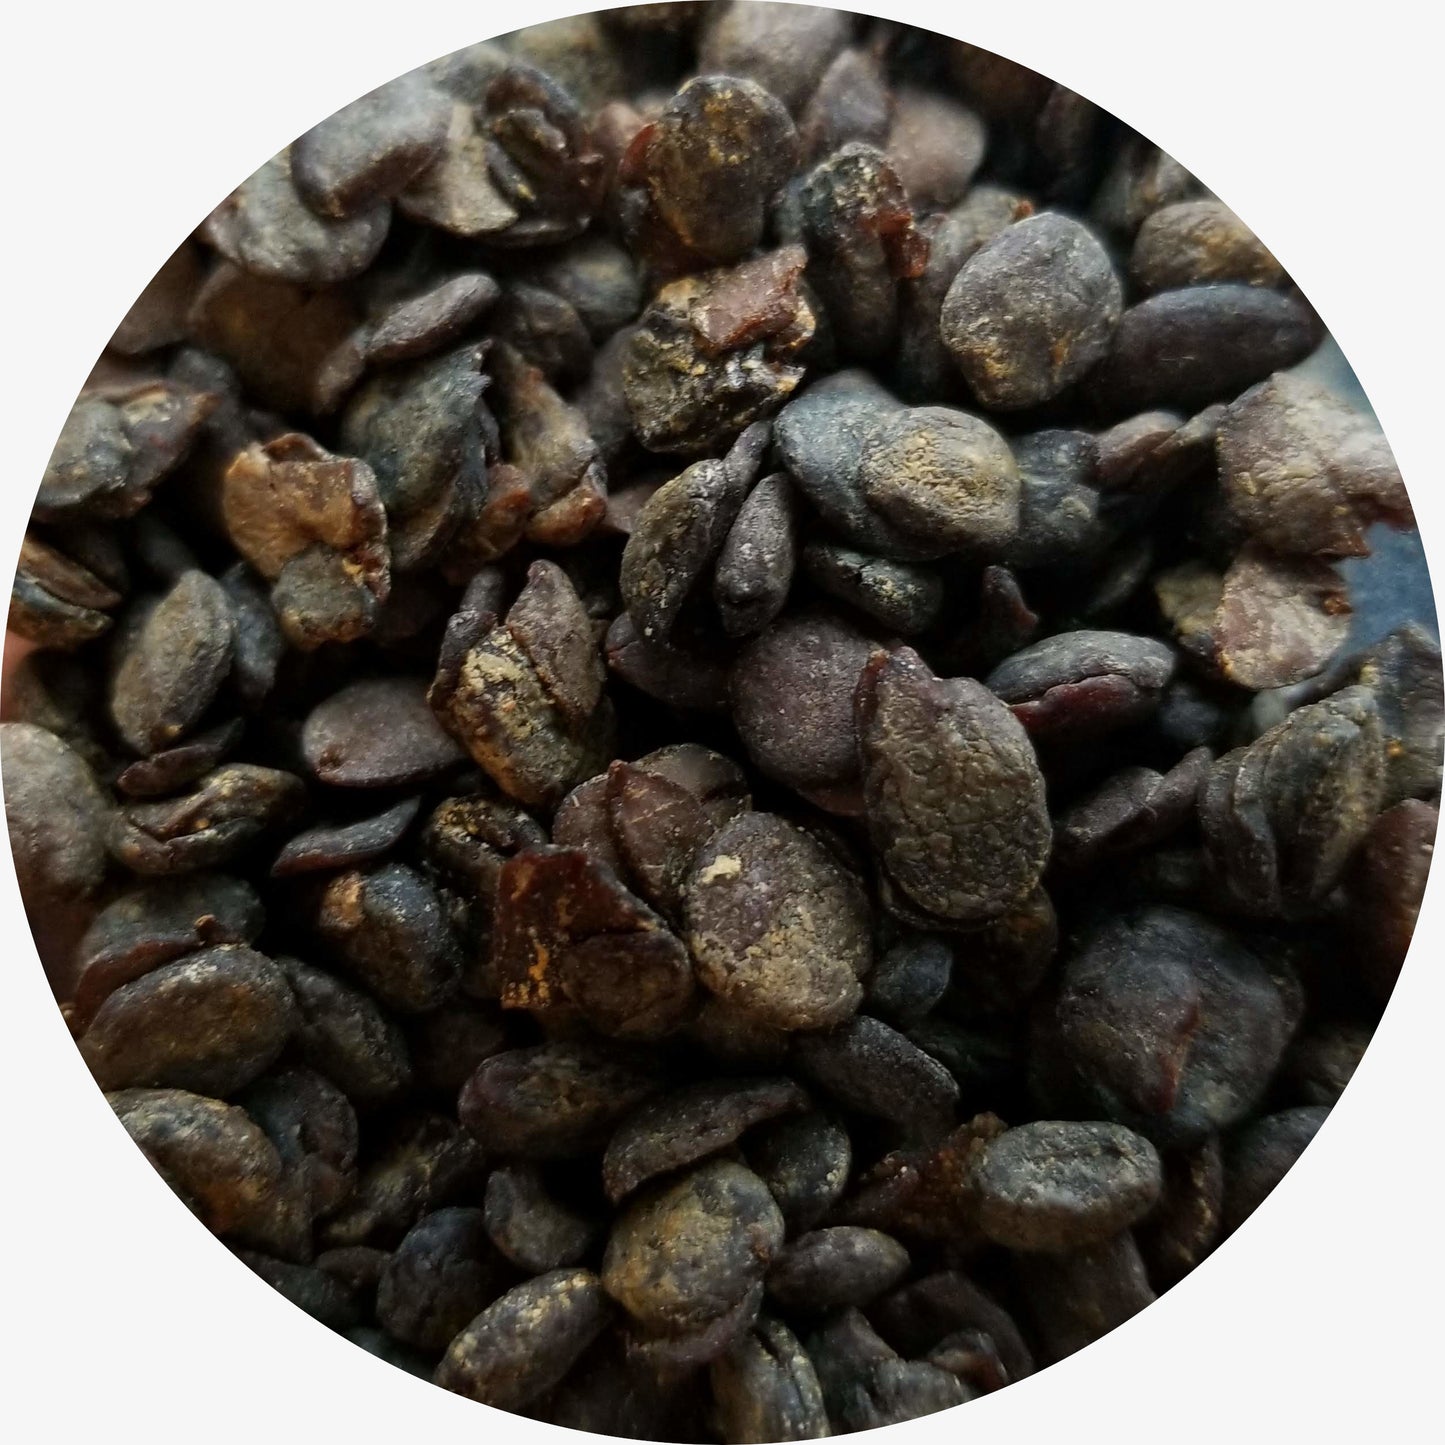 Iru, Fermented Locust Beans, Nigeria, Single Origin